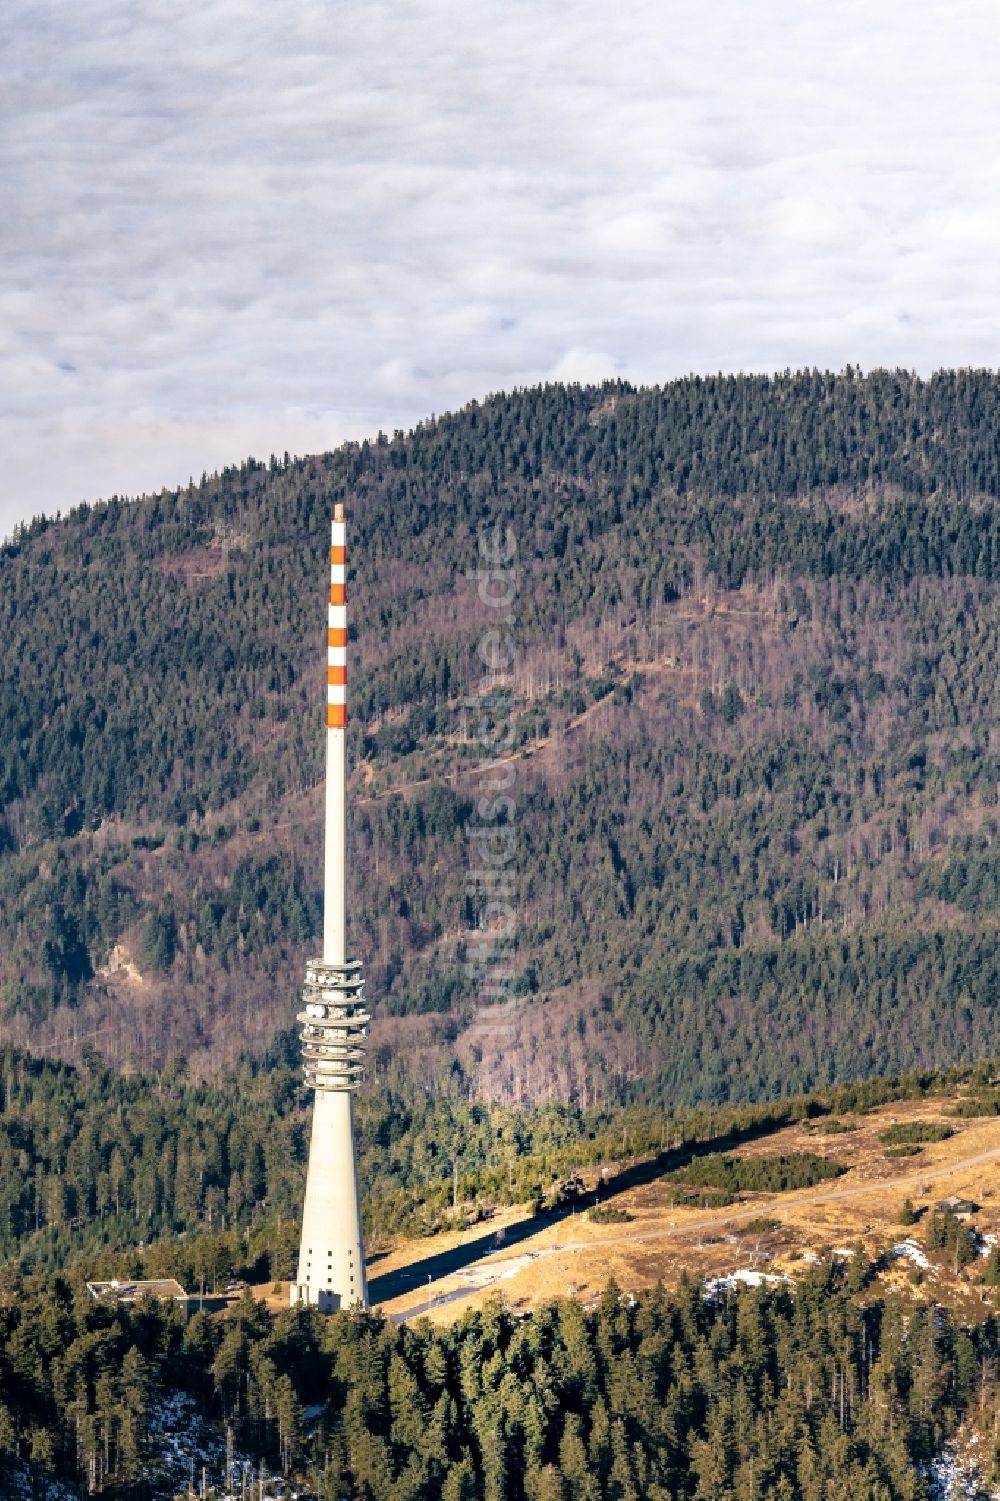 Sasbach von oben - Felsen- und Berglandschaft Hornisginde im Nordschwarzwald mit Funkturm in Sasbach im Bundesland Baden-Württemberg, Deutschland